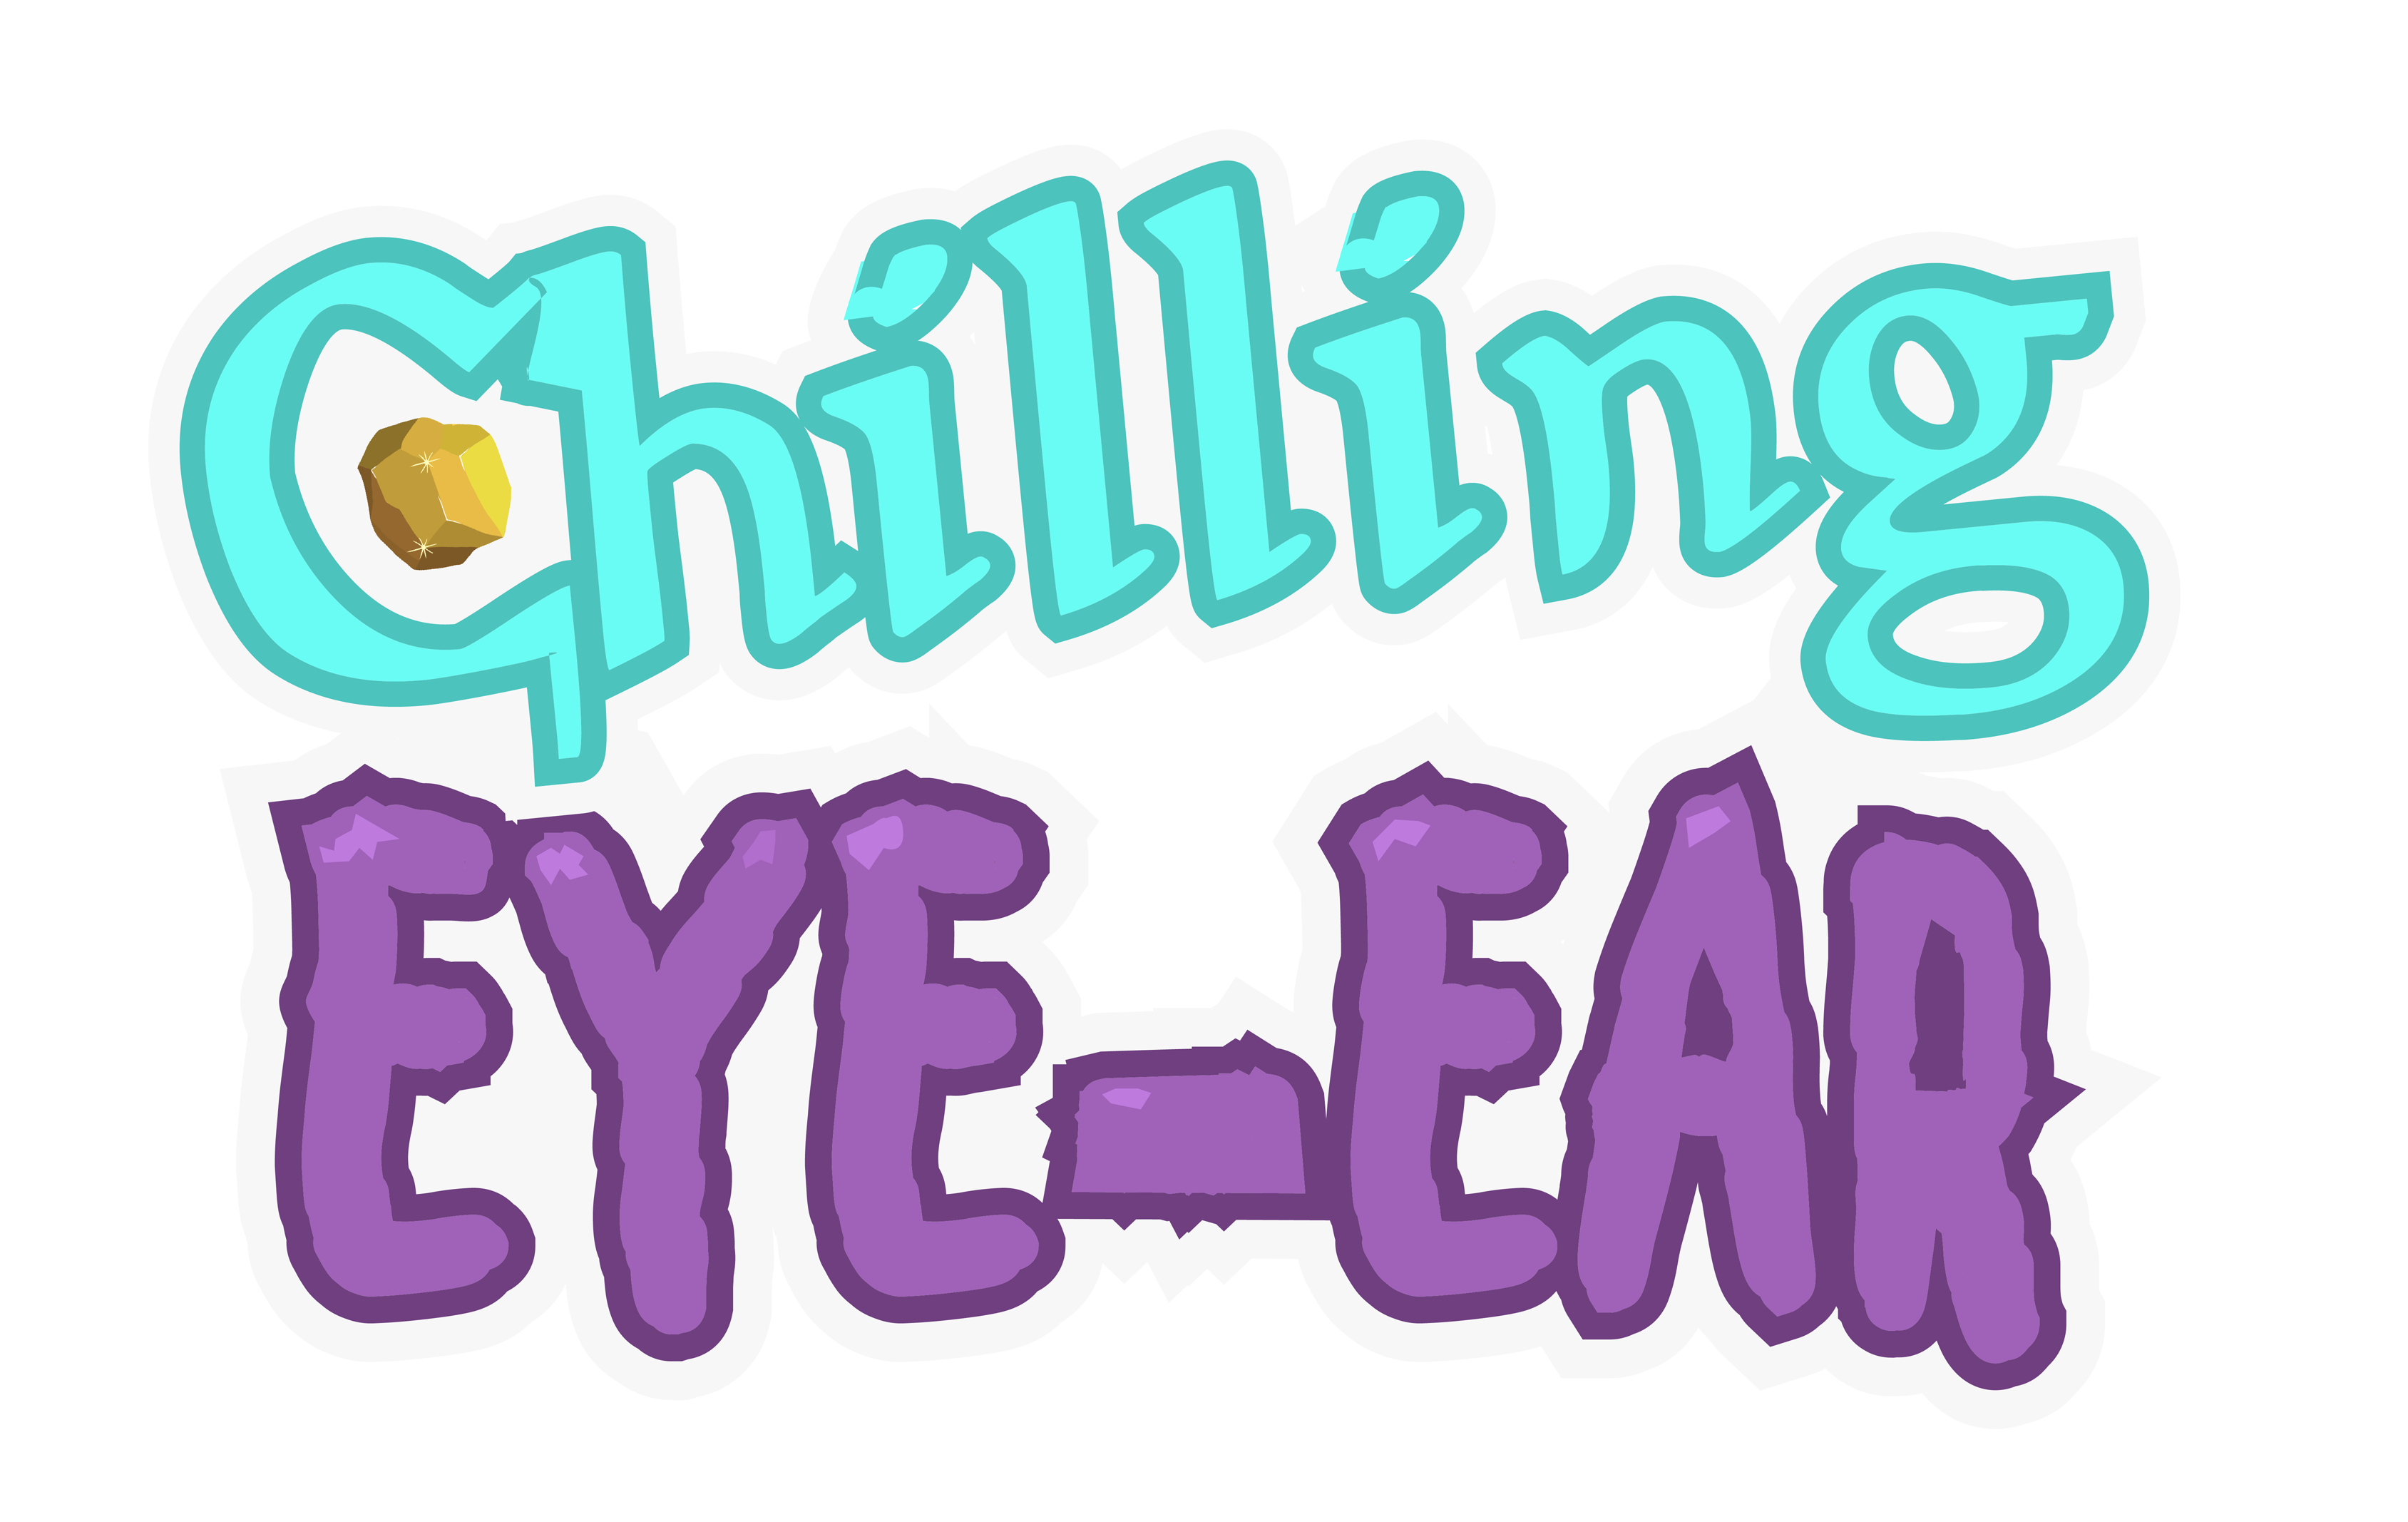 Chilling Eye-Ear